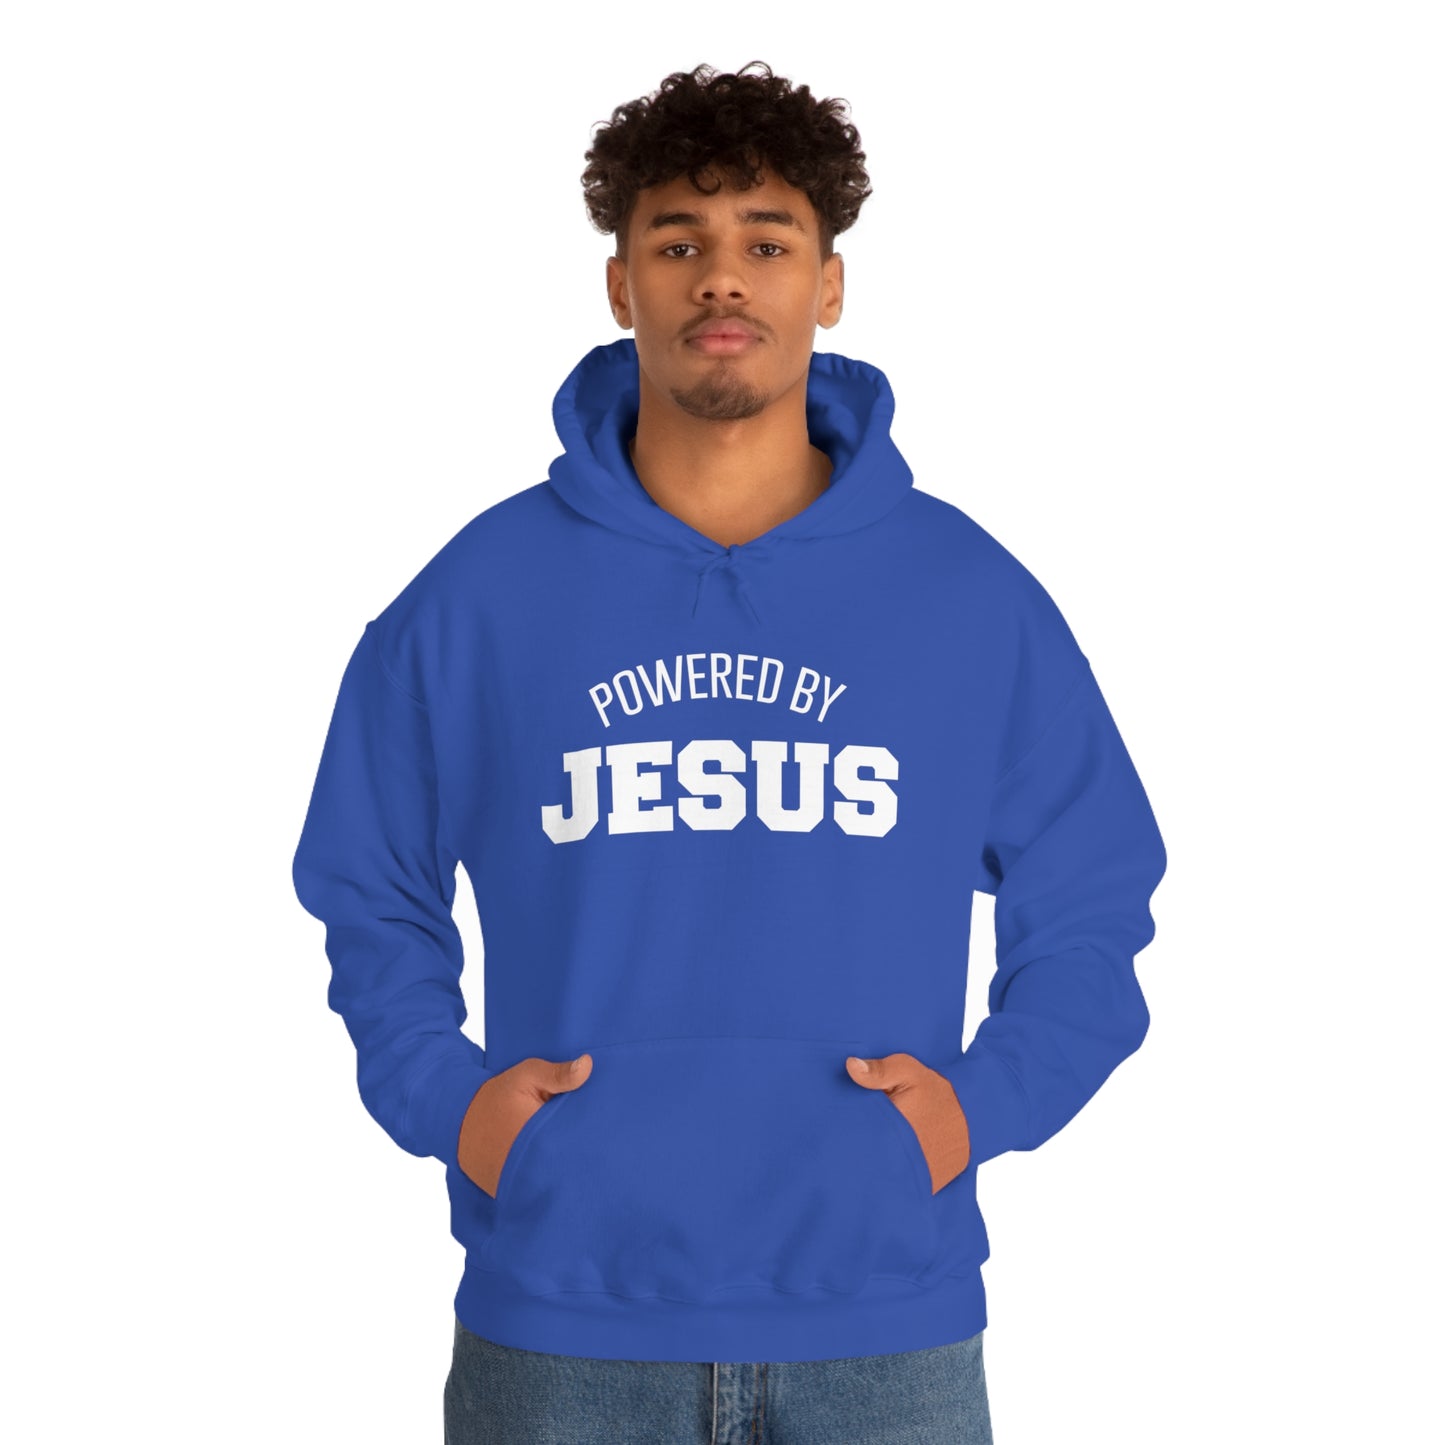 Powered by JESUS Hooded Sweatshirt